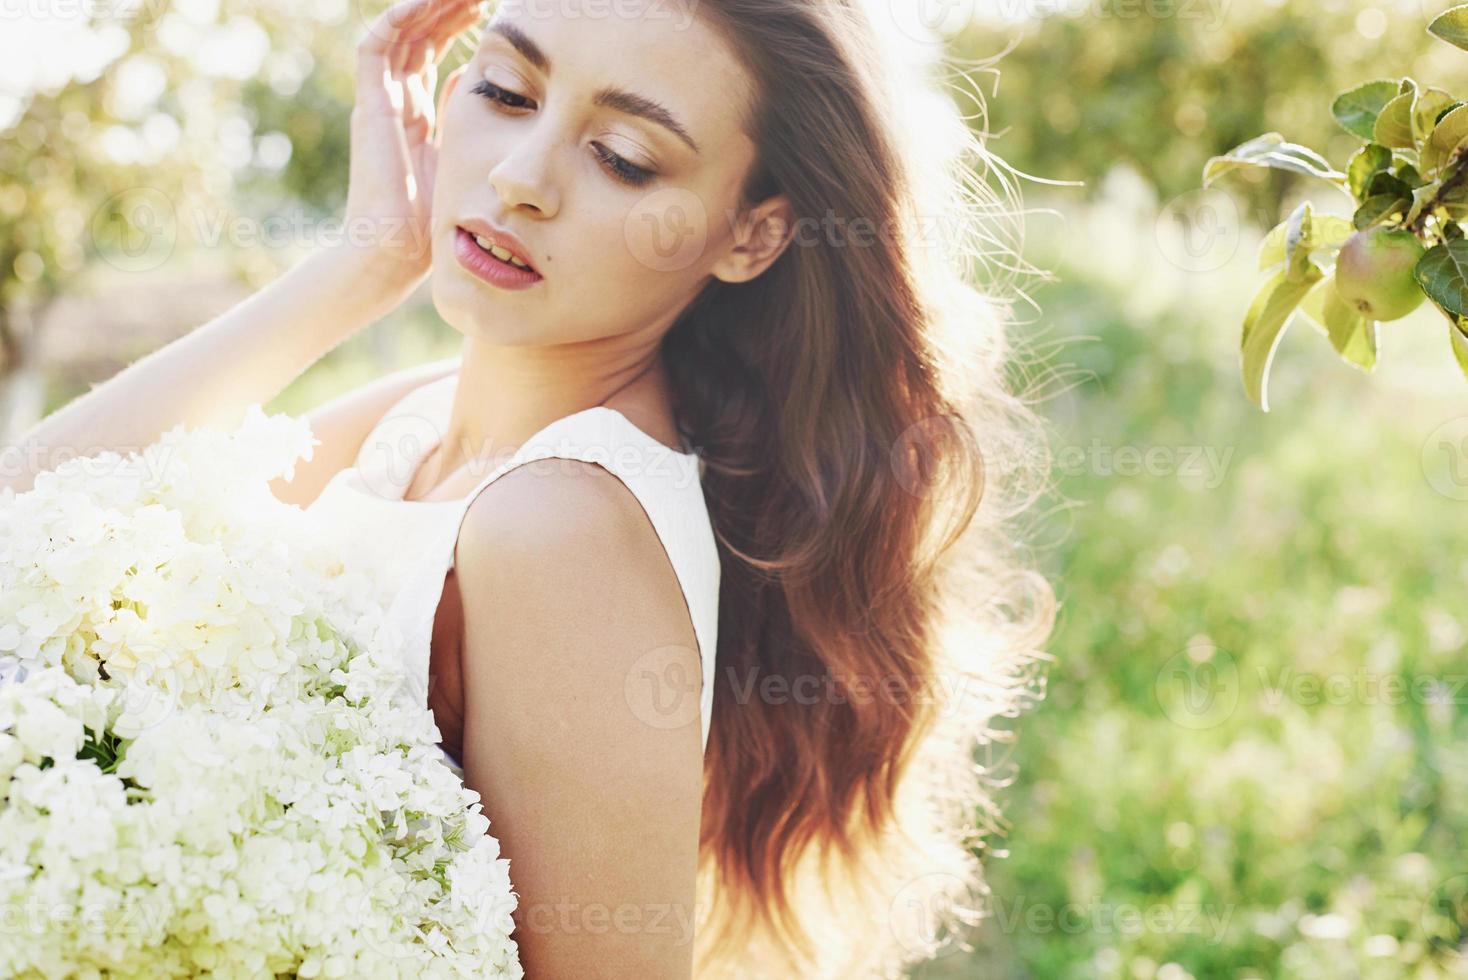 belle jeune femme vêtue d'une élégante robe blanche et profitant d'un bel après-midi ensoleillé dans un jardin d'été photo